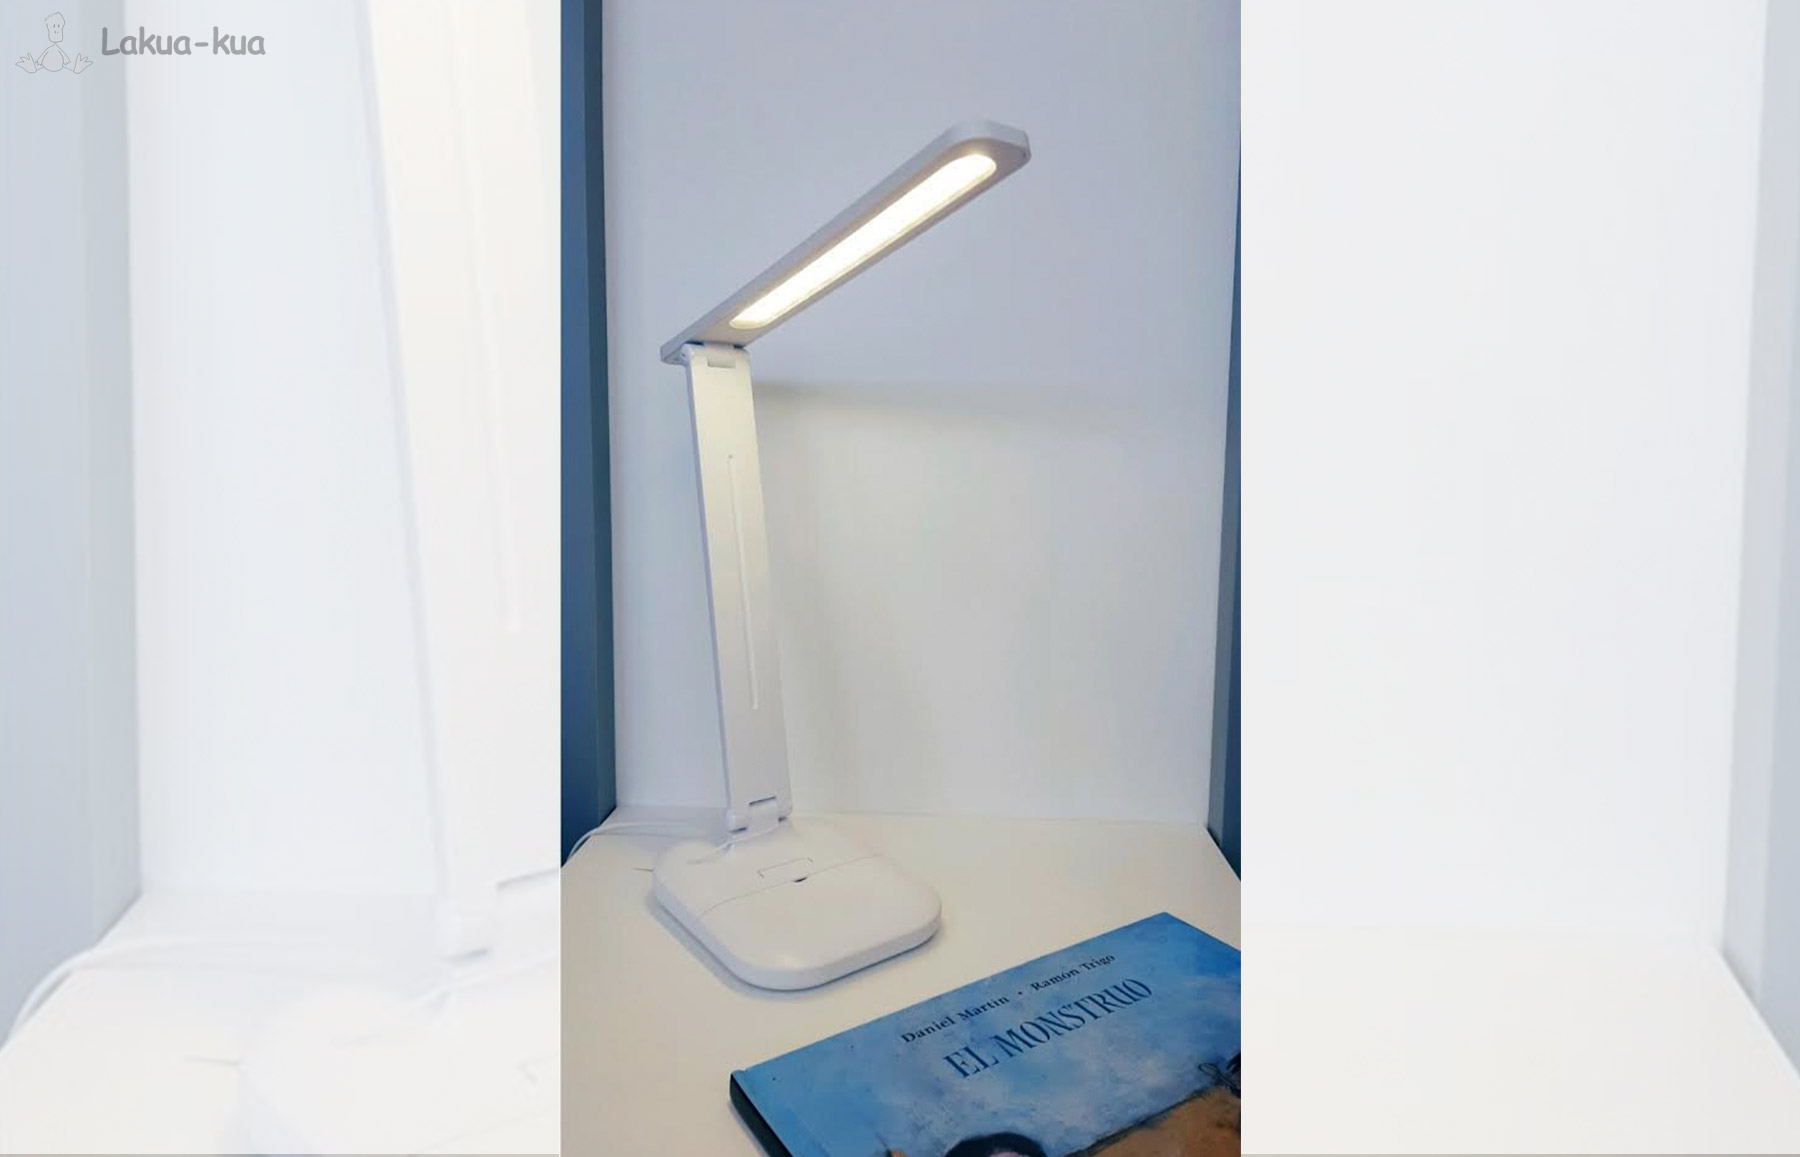 Flexo - Iluminación Lámparas Personalizadas Muebles Lakua-kua